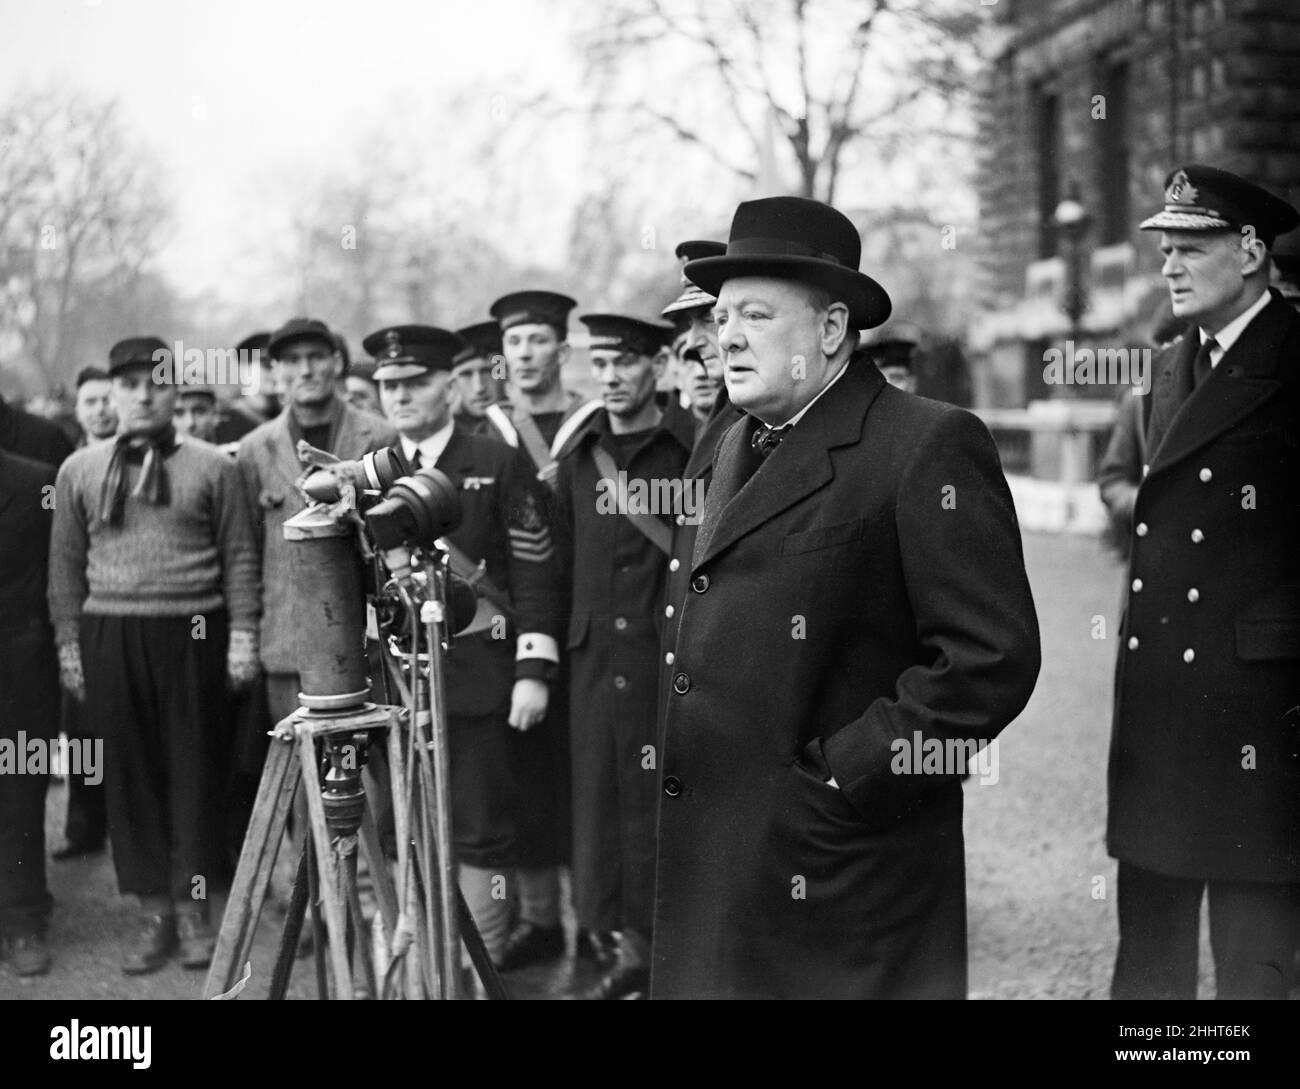 Premier seigneur de l'Amirauté Winston Churchill inspectant les marins du HMS Hardy sur Horse Guards Parade dans le centre de Londres pendant la Seconde Guerre mondiale.19th avril 1940. Banque D'Images